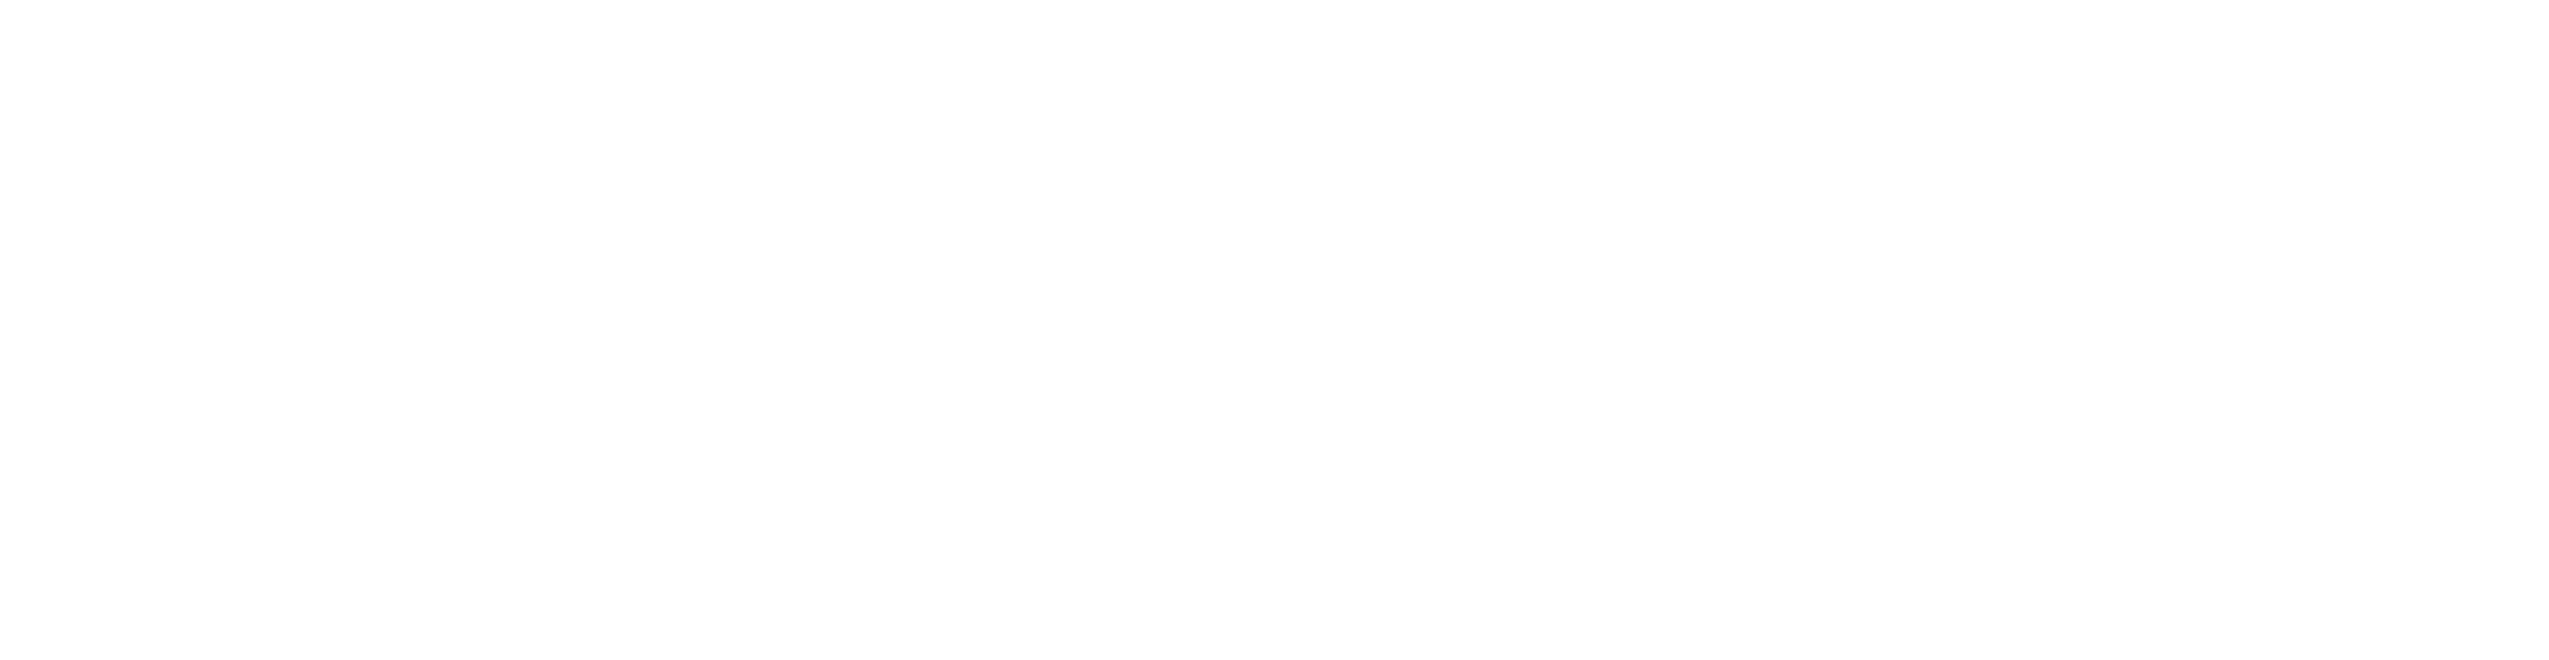 Institute of Coding logo